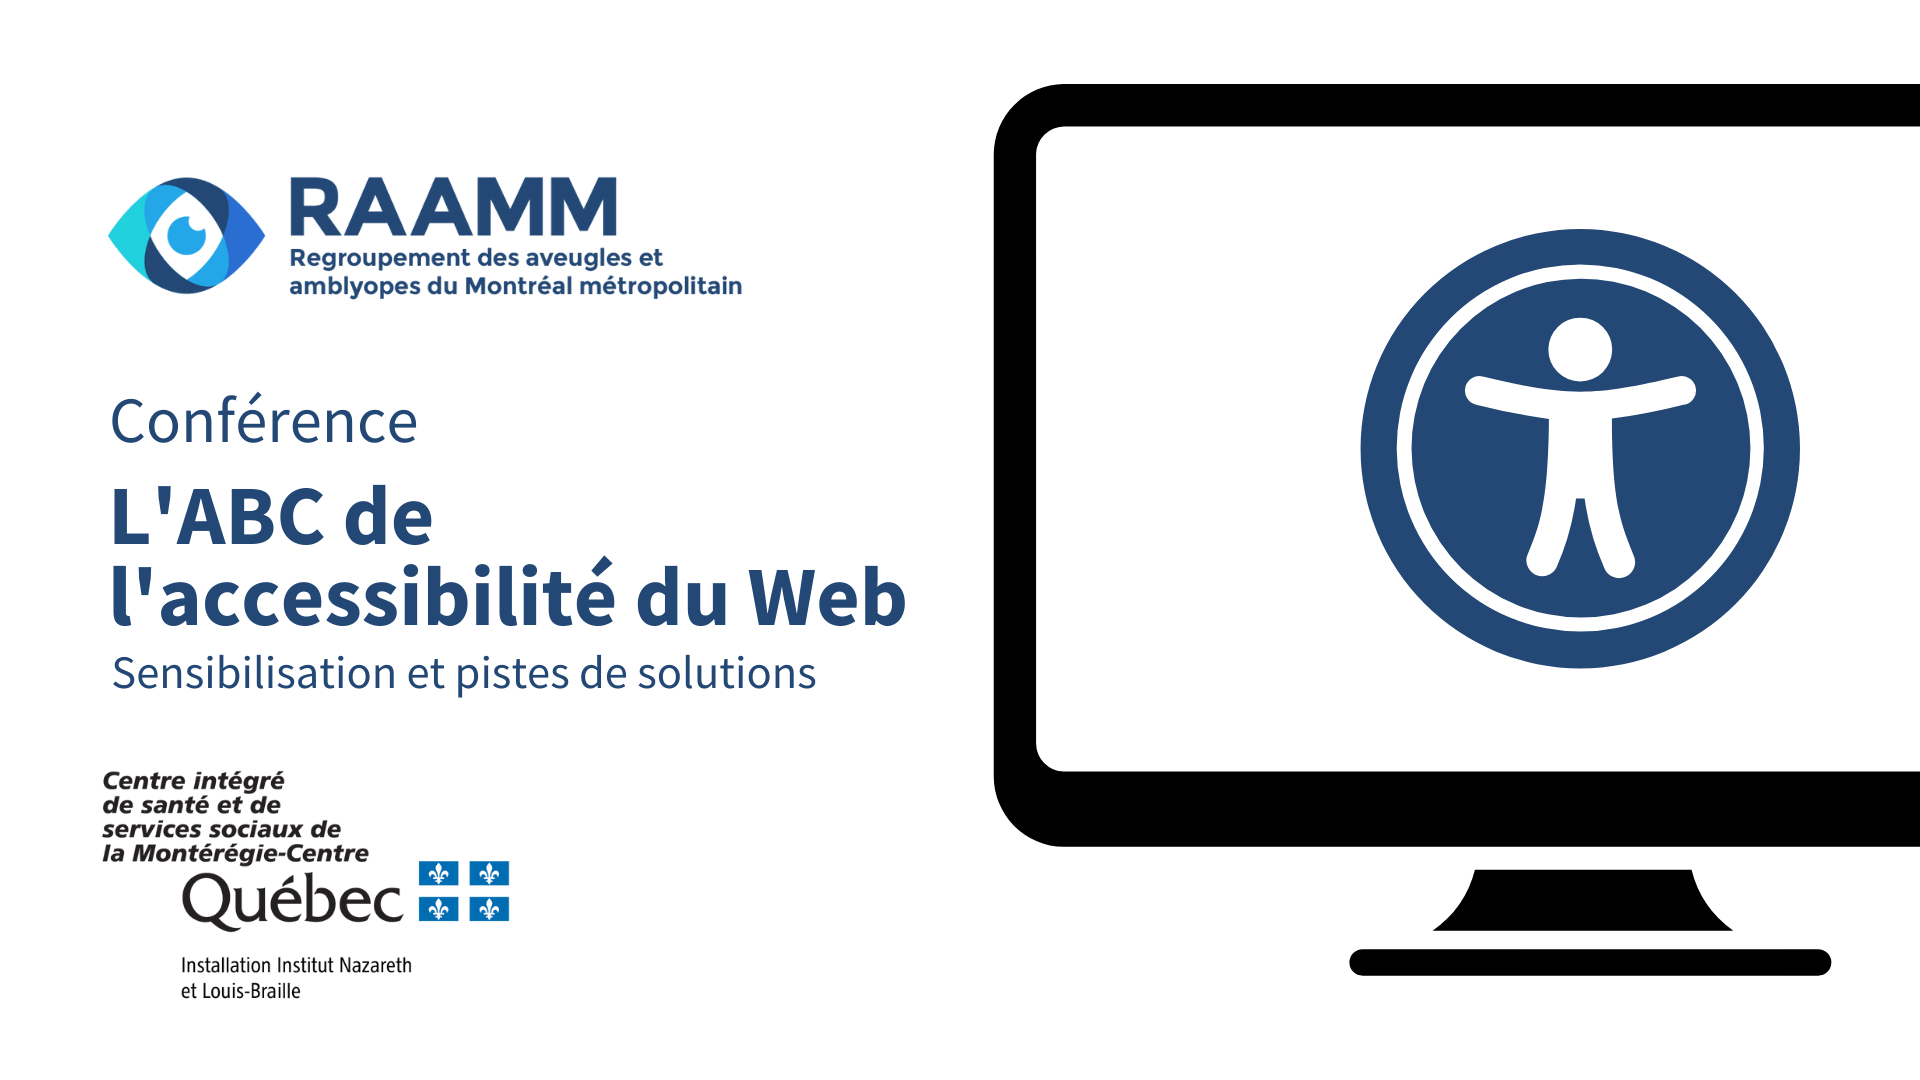 Conférence L'ABC de l'accessibilité du Web: sensibilisation et pistes de solutions. Logos du RAAMM et du CISSS de la Montérégie-Centre, installation Institut Nazareth et Louis-Braille.